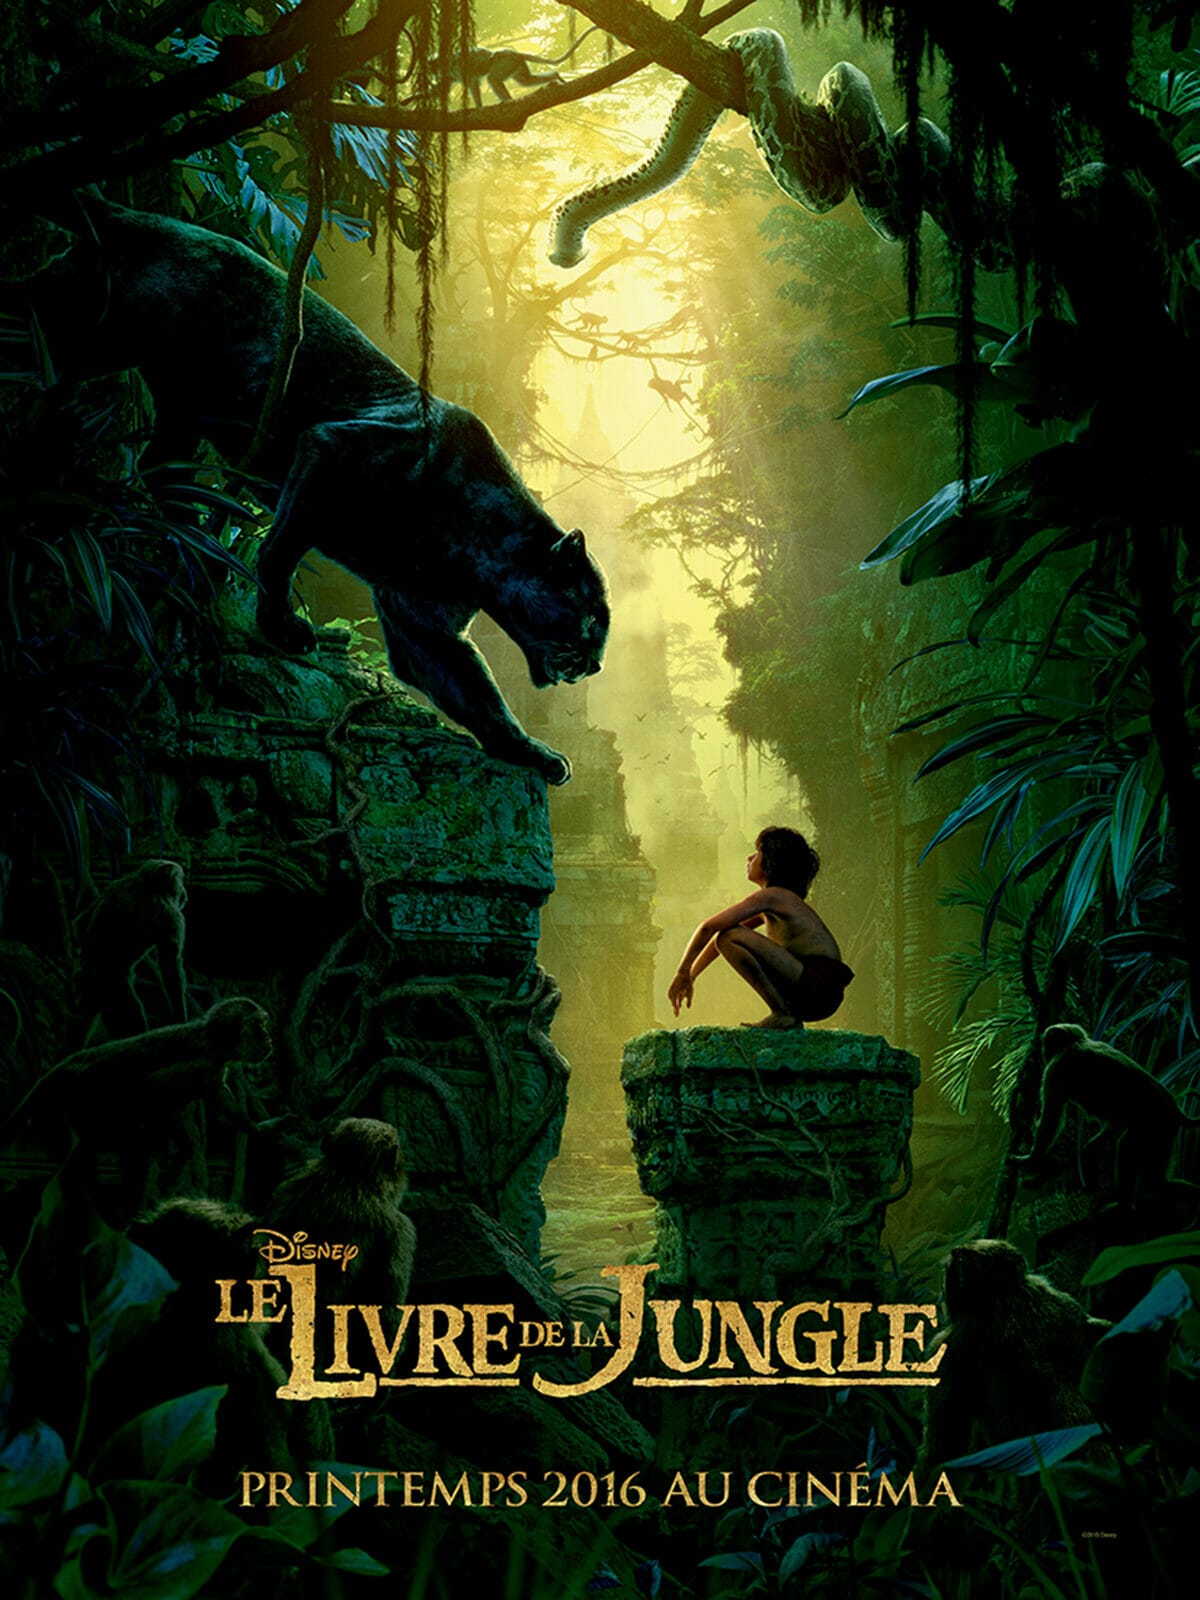 Le-livre-de-la-jungle-poster-teaser